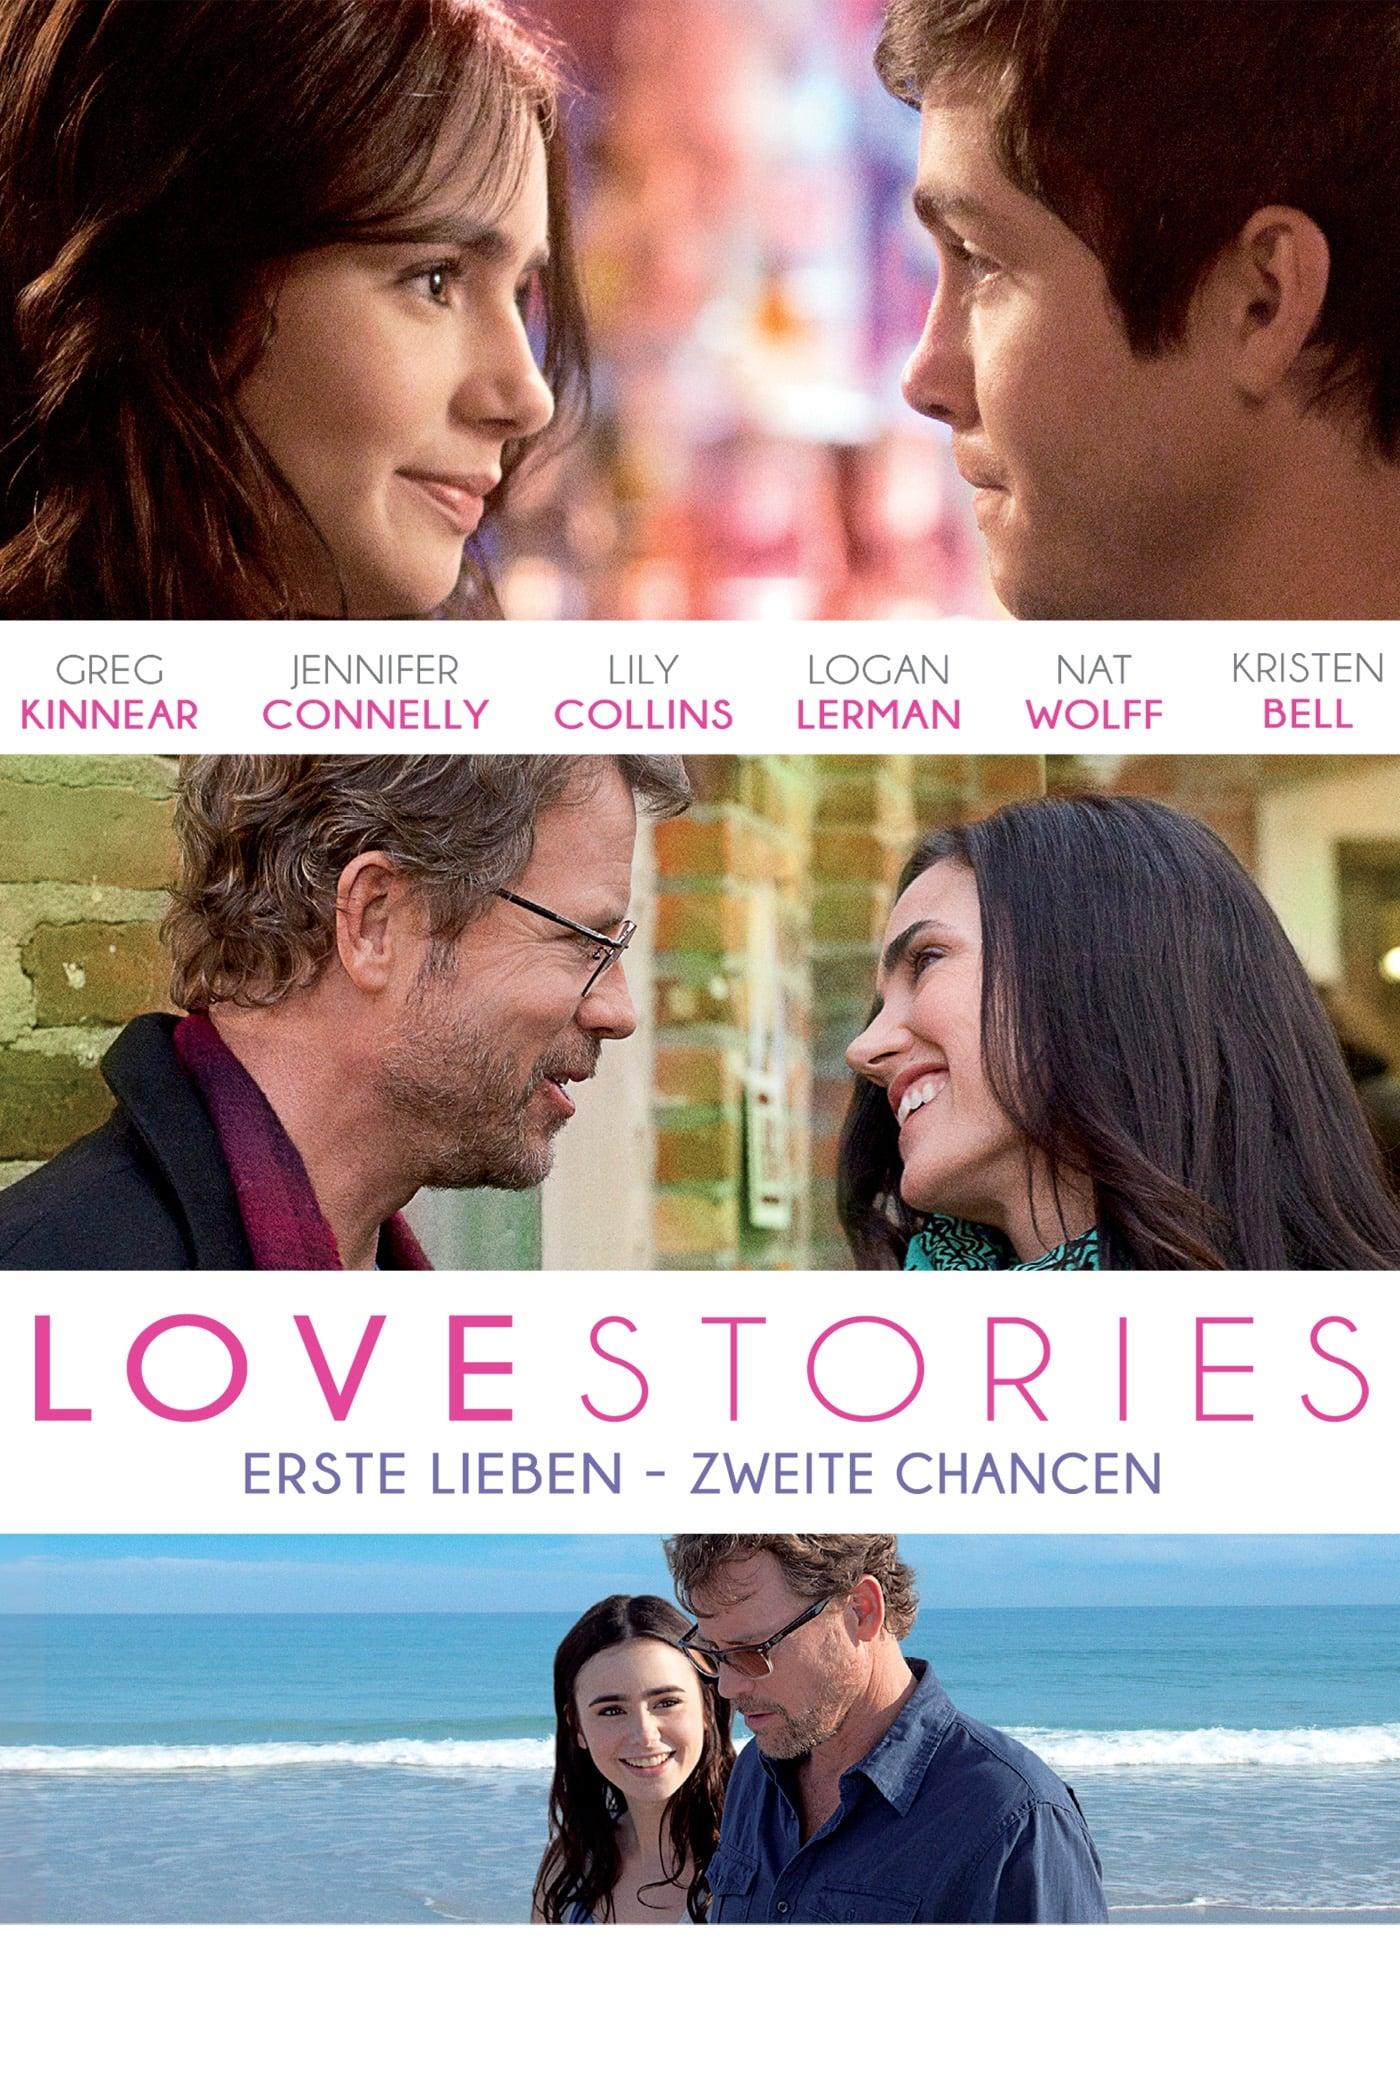 Love Stories - Erste Lieben, zweite Chancen poster